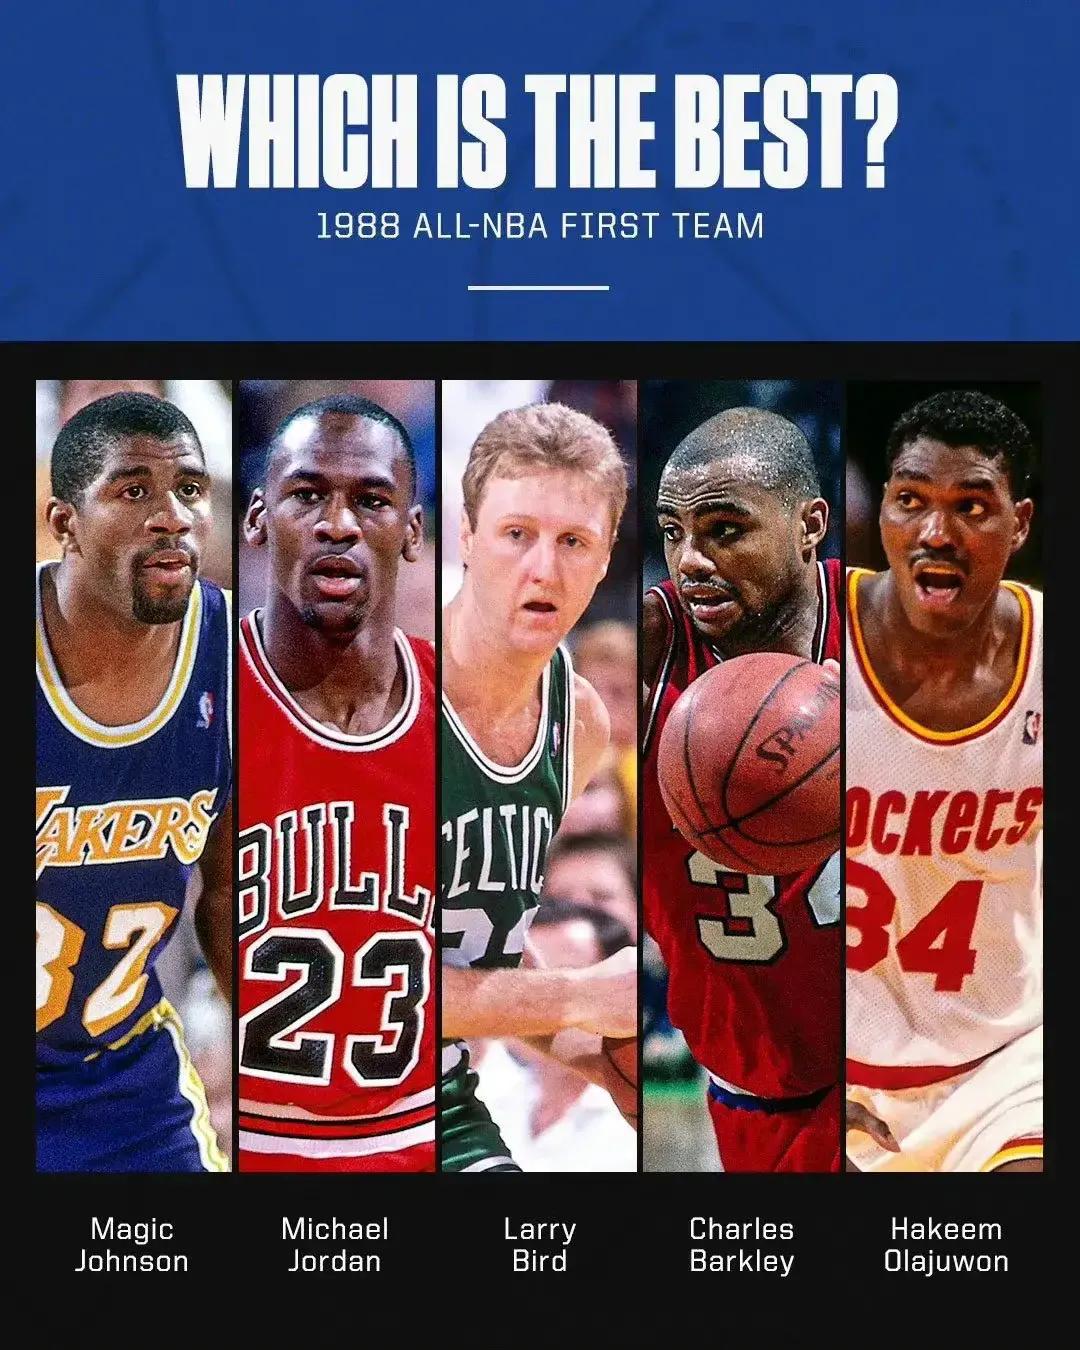 美媒ESPN发问：88年一阵和03年一阵哪个才是历史最佳阵容？

02-03赛季